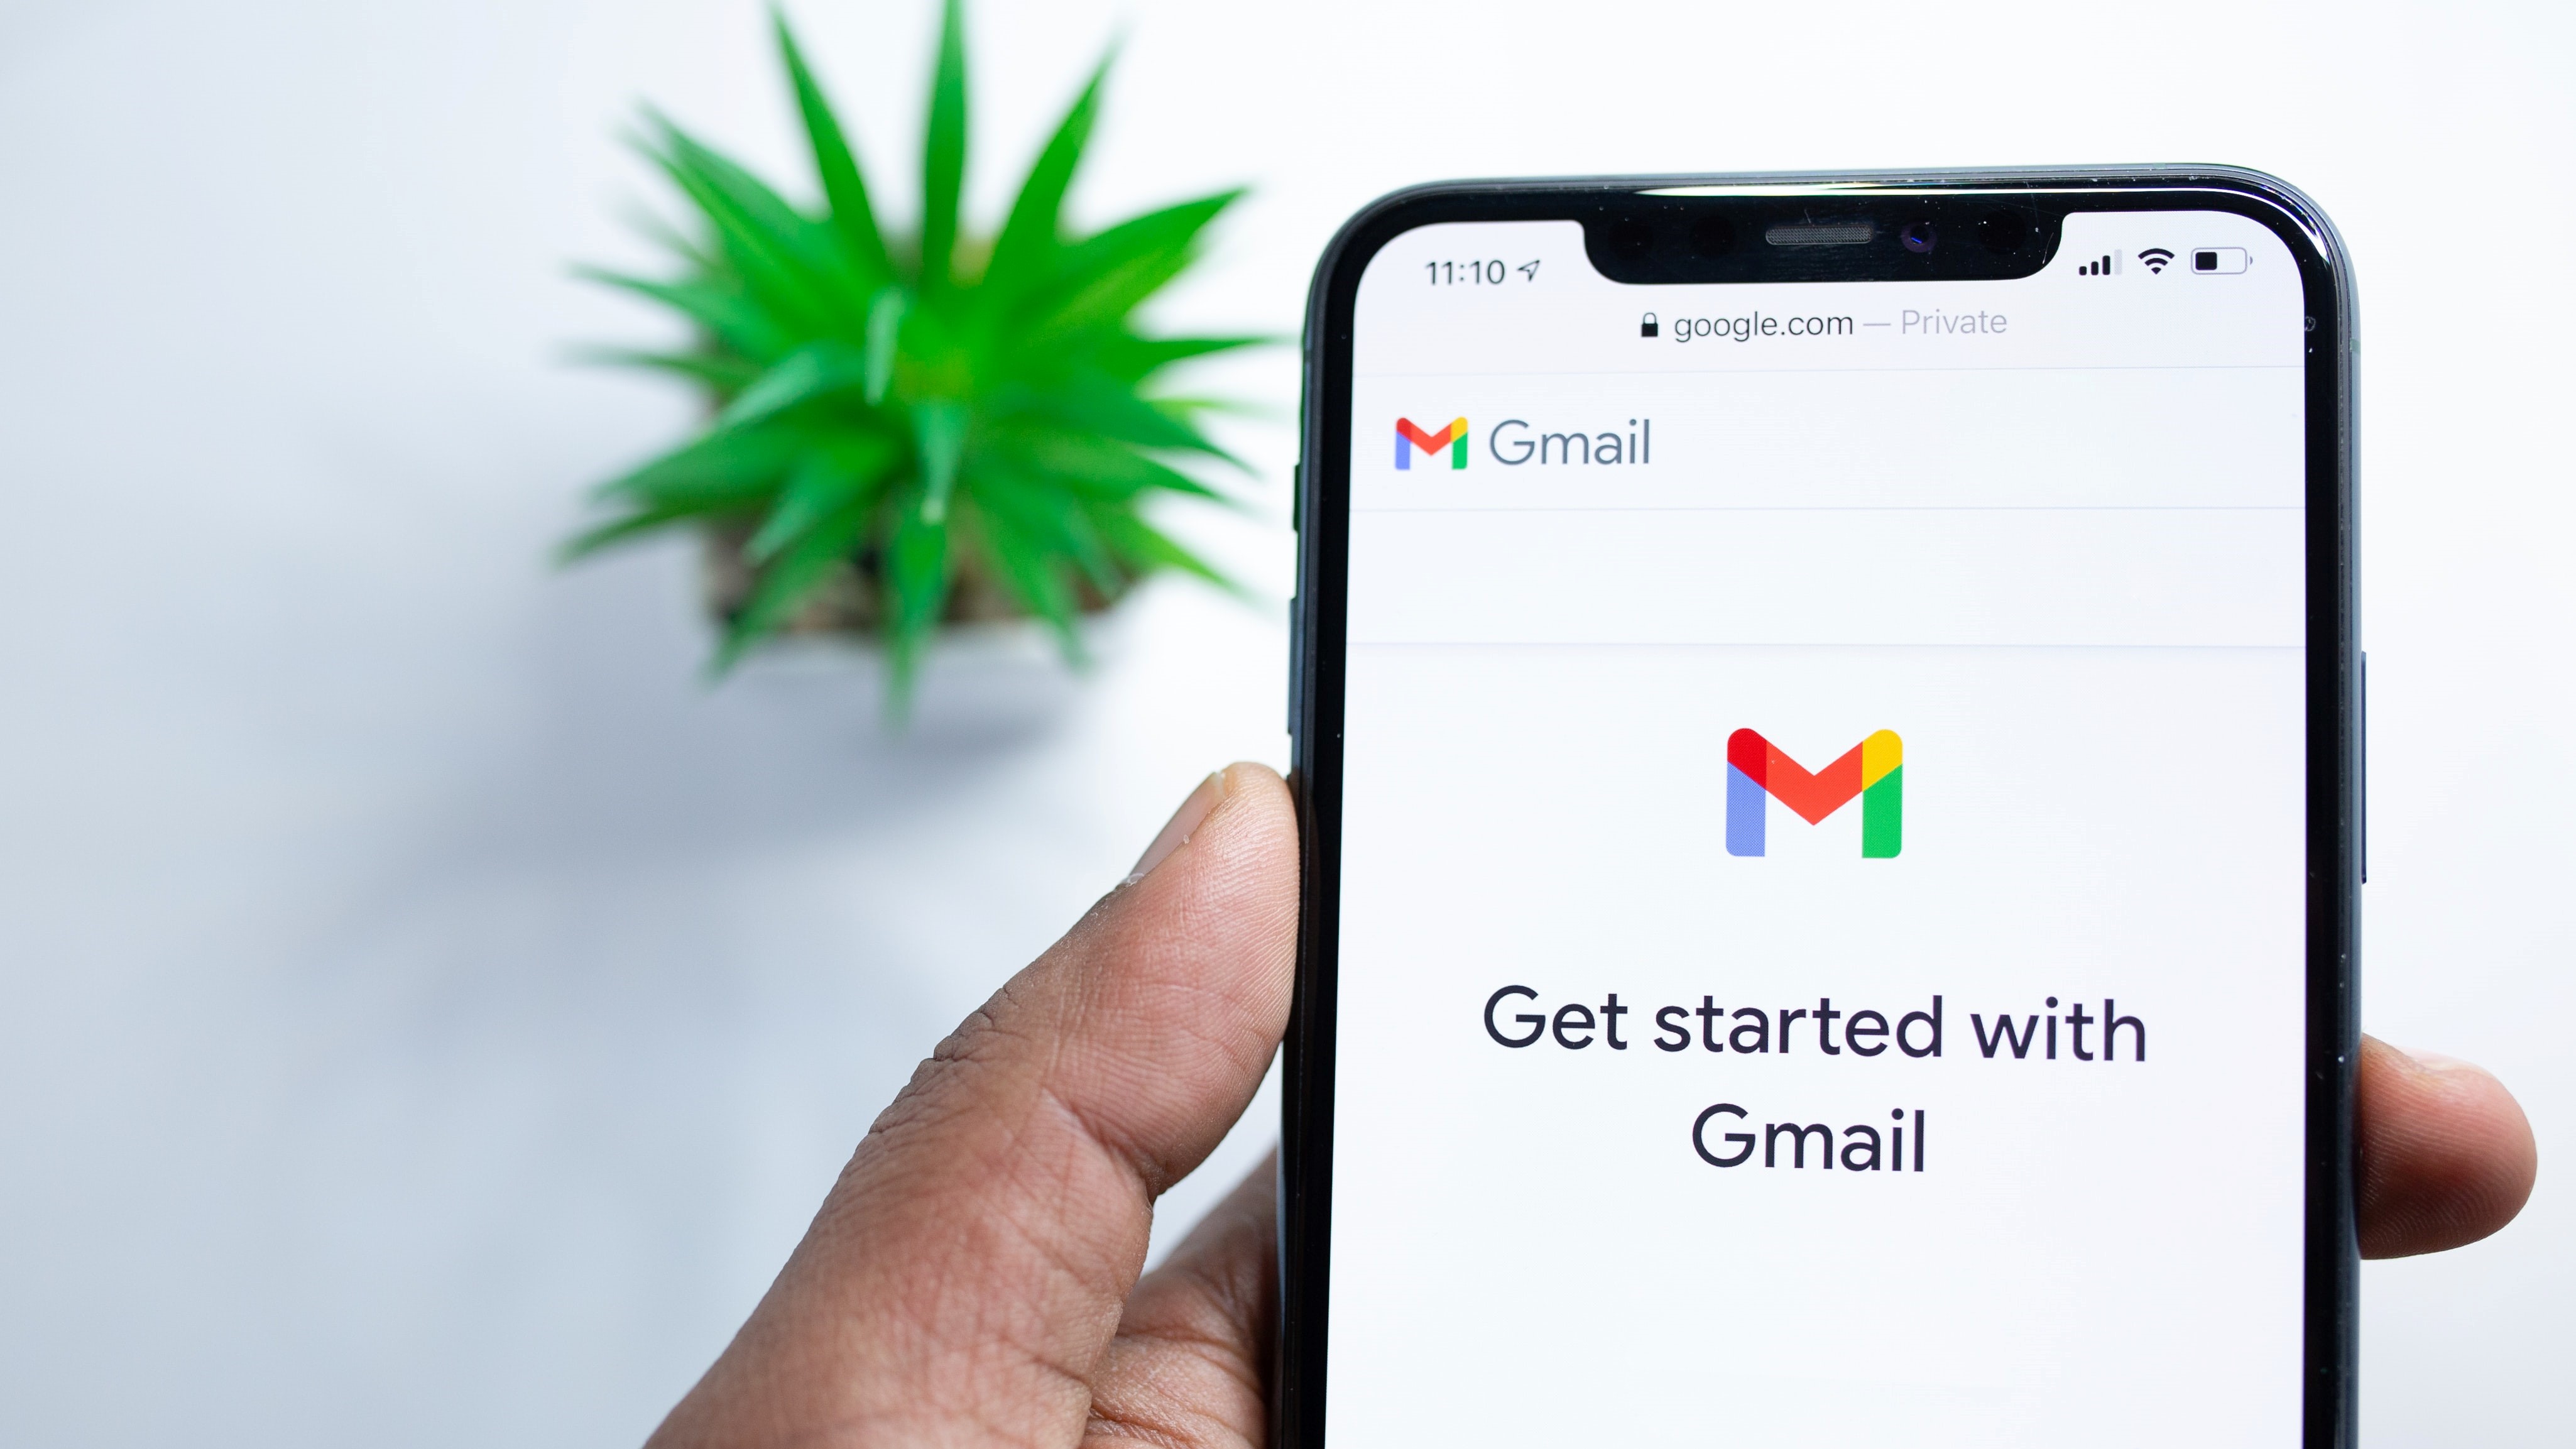 Ваша учетная запись Gmail настроена на еще более раздражающую рекламу